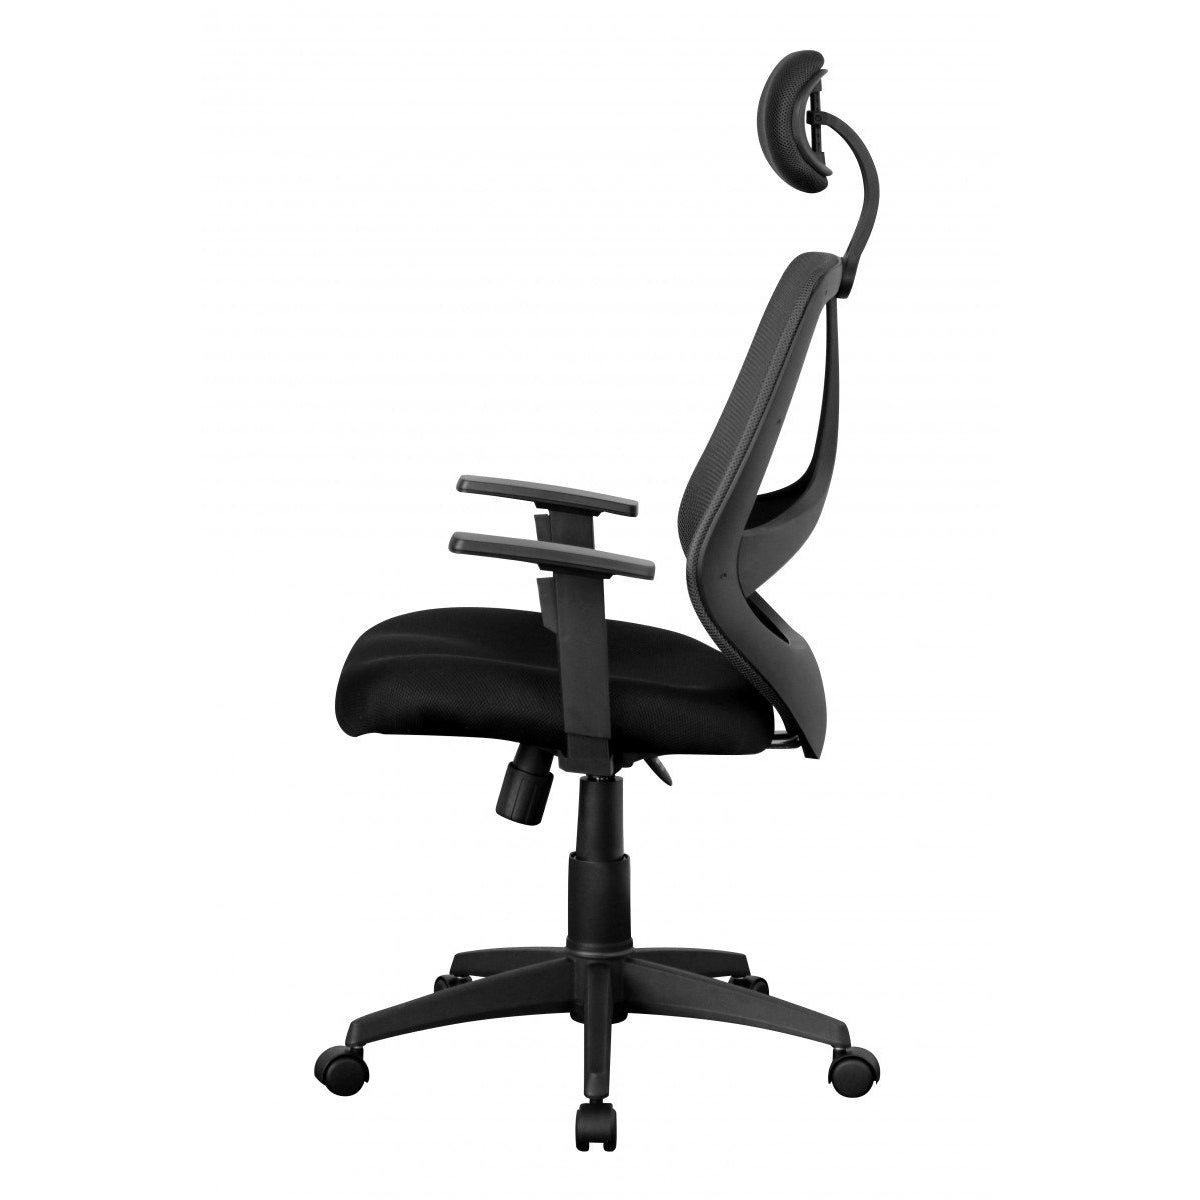 Chaise de bureau Nancy's Zion - Chaise pivotante - Chaise de direction - Réglable - Appui-tête - Ergonomique - Noir